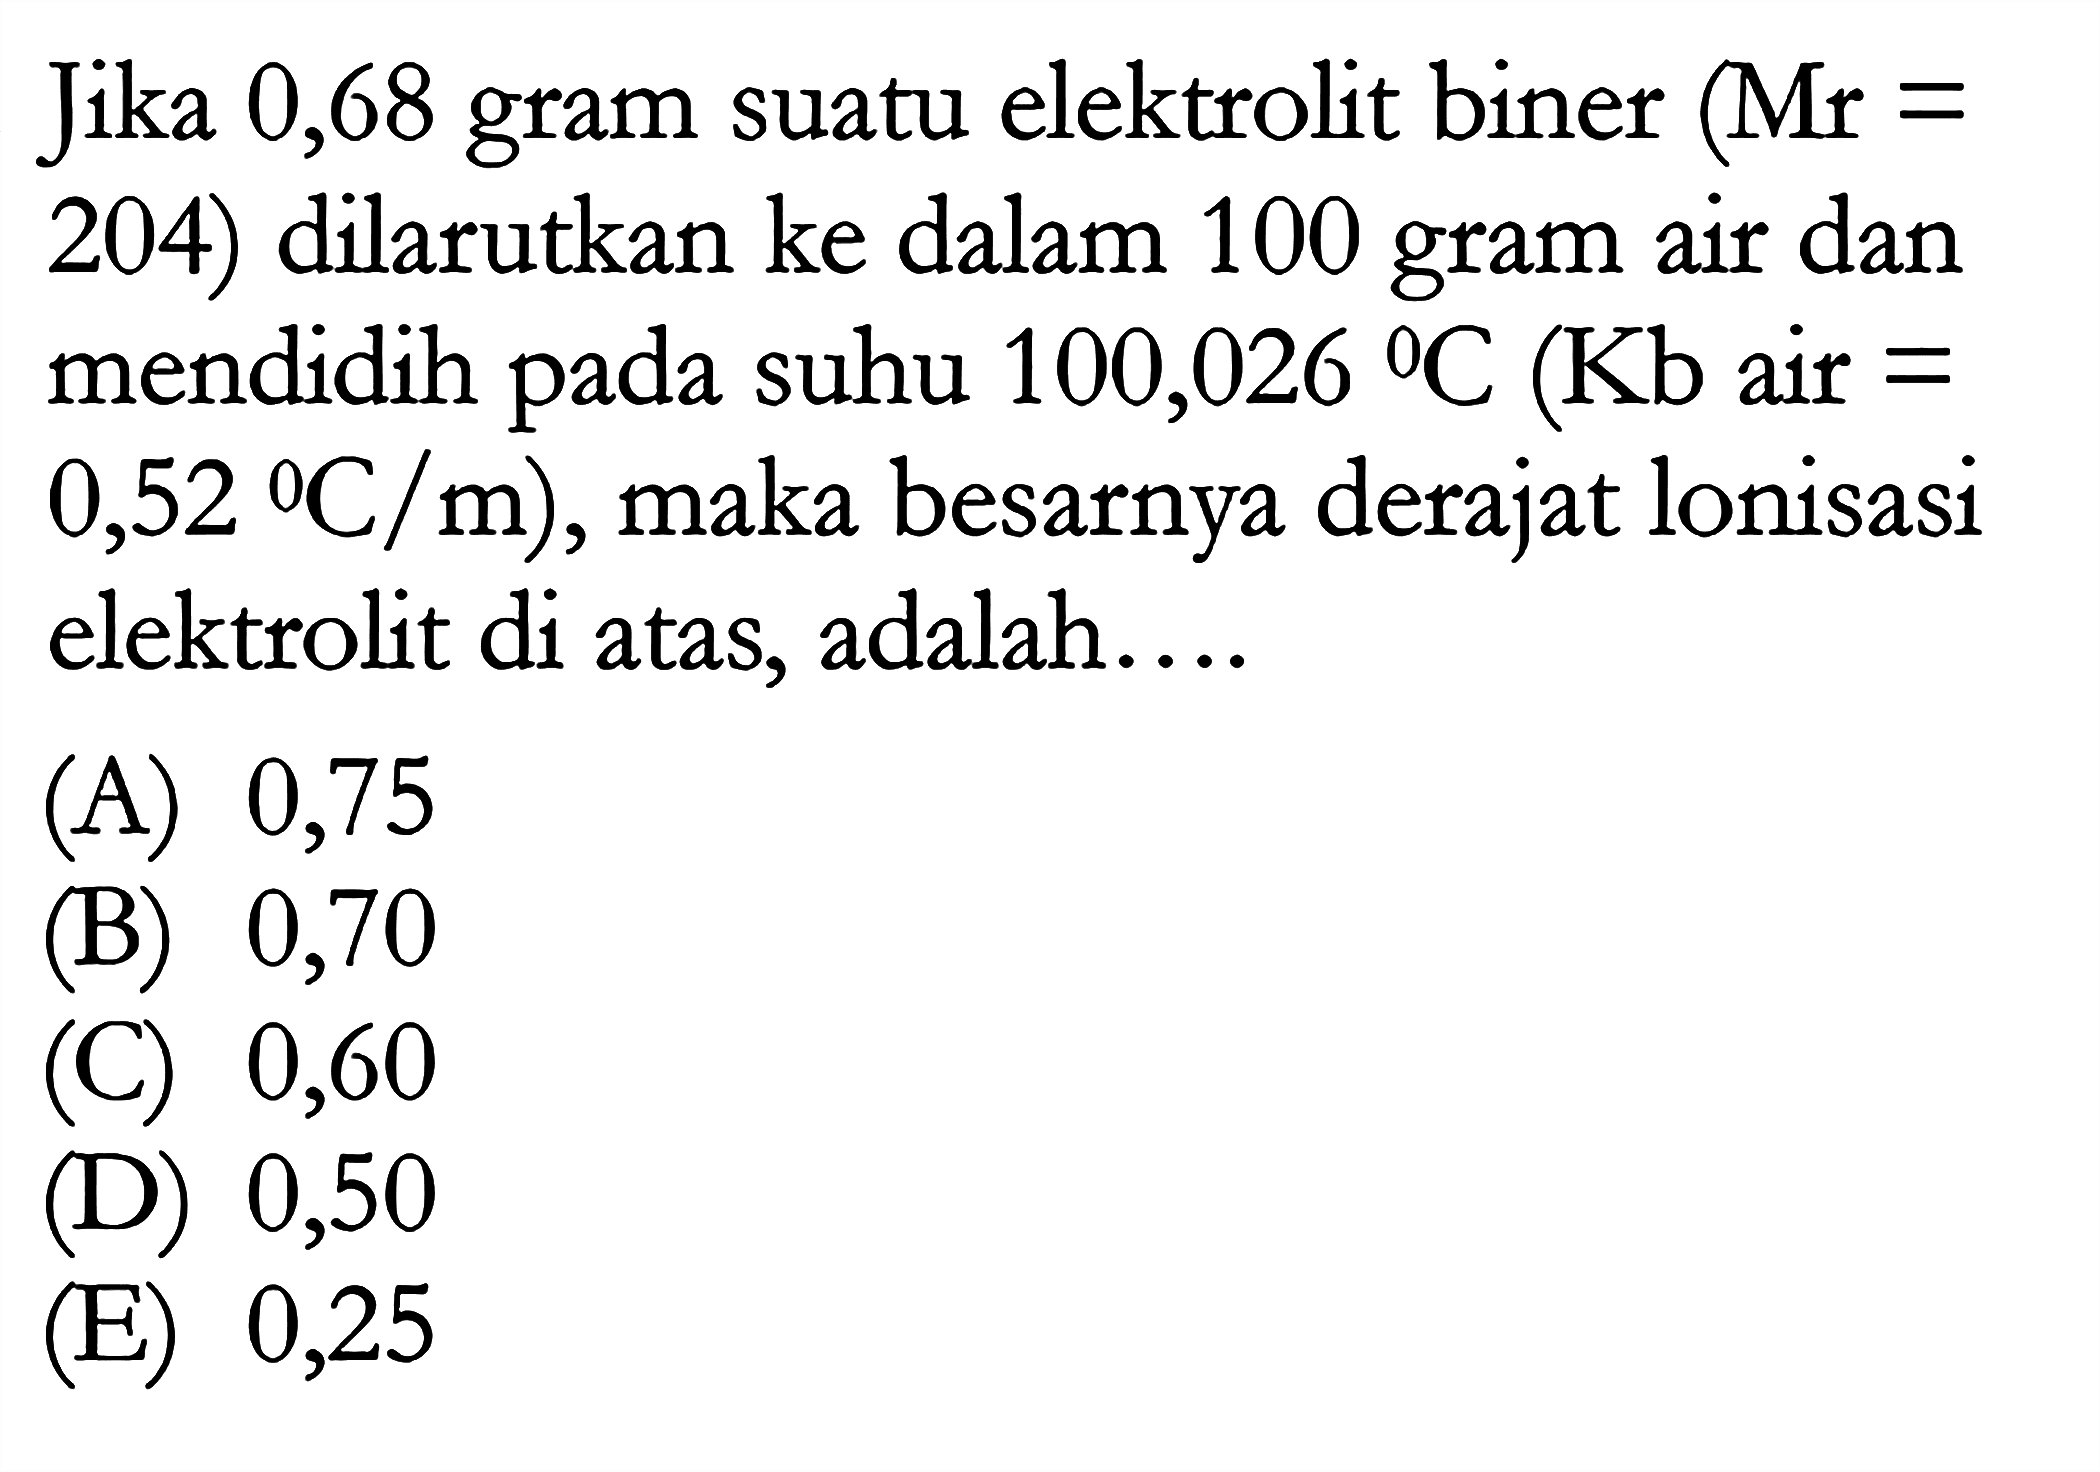 Jika 0,68 gram suatu elektrolit biner (Mr = 204) dilarutkan ke dalam 100 gram air dan mendidih pada suhu 100,026 C (Kb air = 0,52 C/m), maka besarnya derajat lonisasi elektrolit di atas, adalah ...